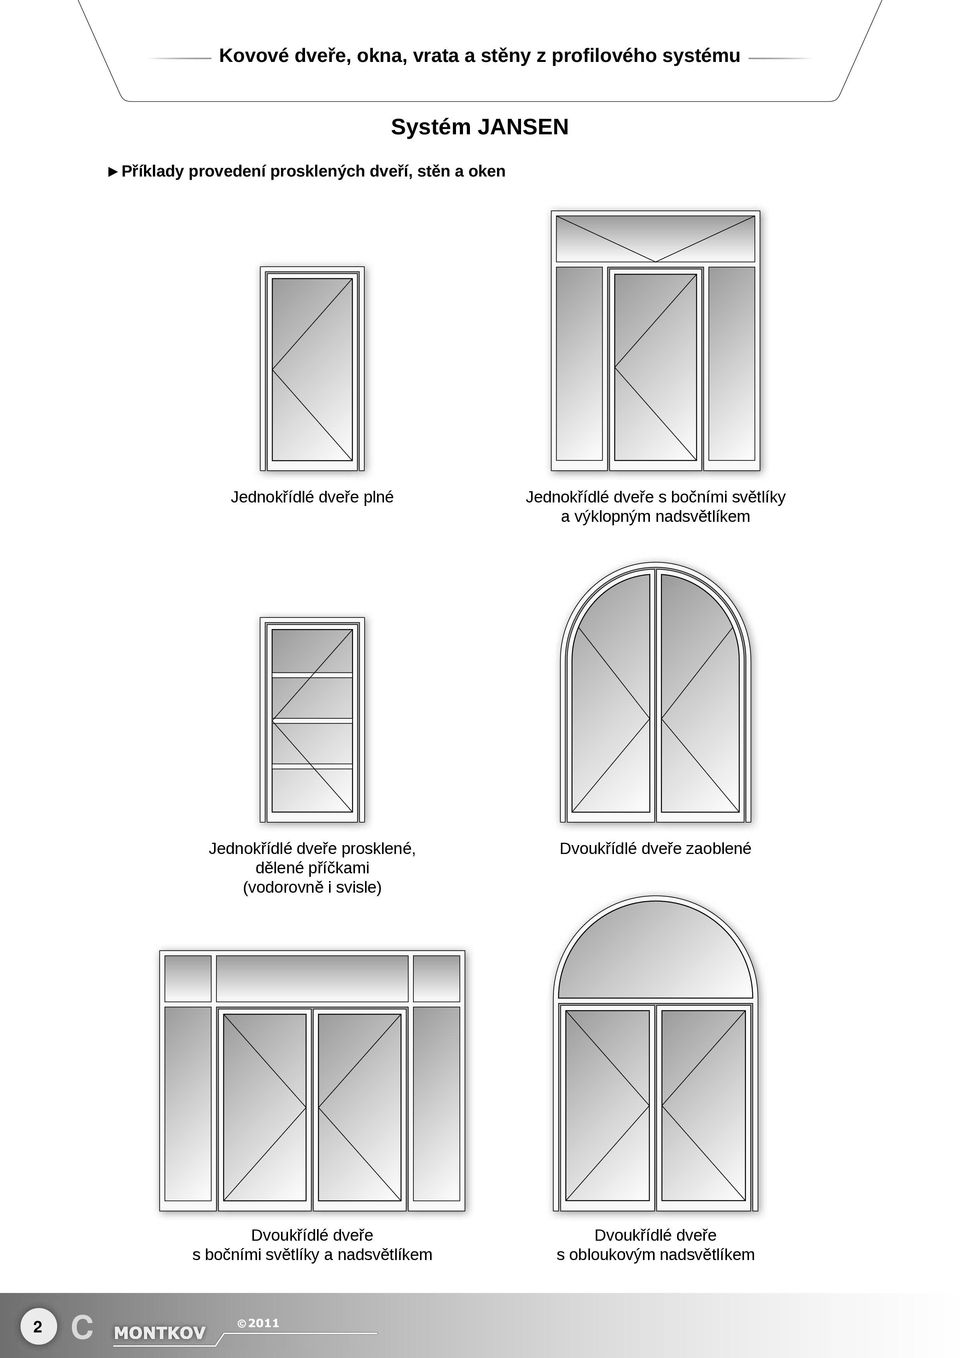 výklopným nadsvětlíkem Jednokřídlé dveře prosklené, dělené příčkami (vodorovně i svisle)